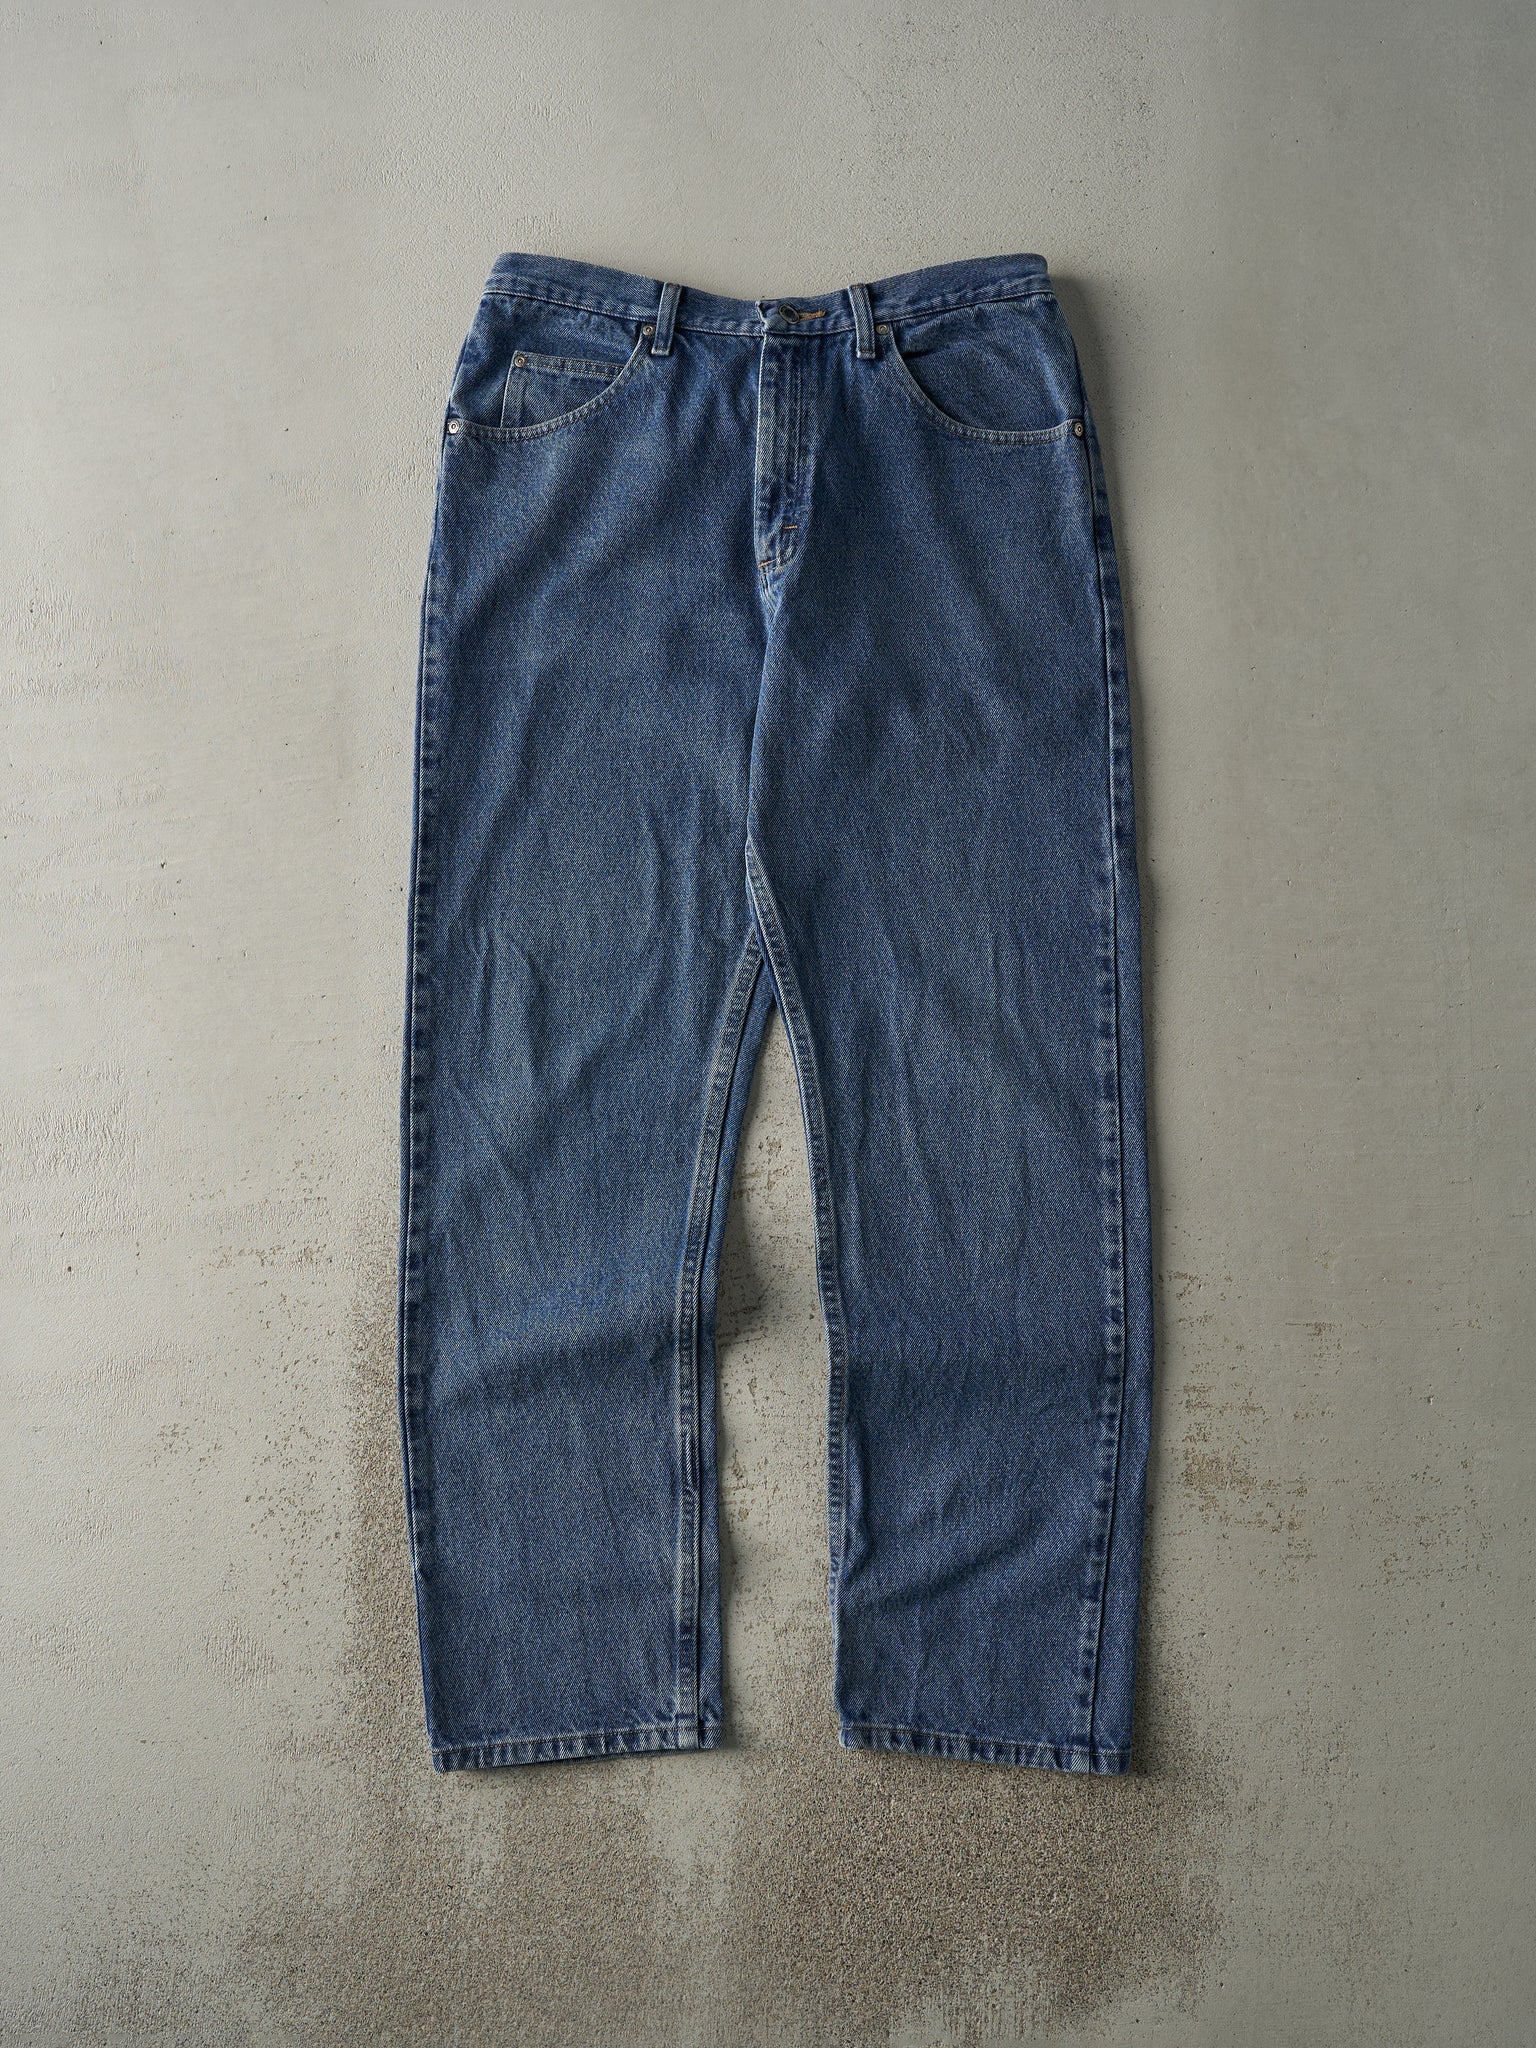 Vintage 90s Dark Wash Wrangler Jeans (34x33.5)